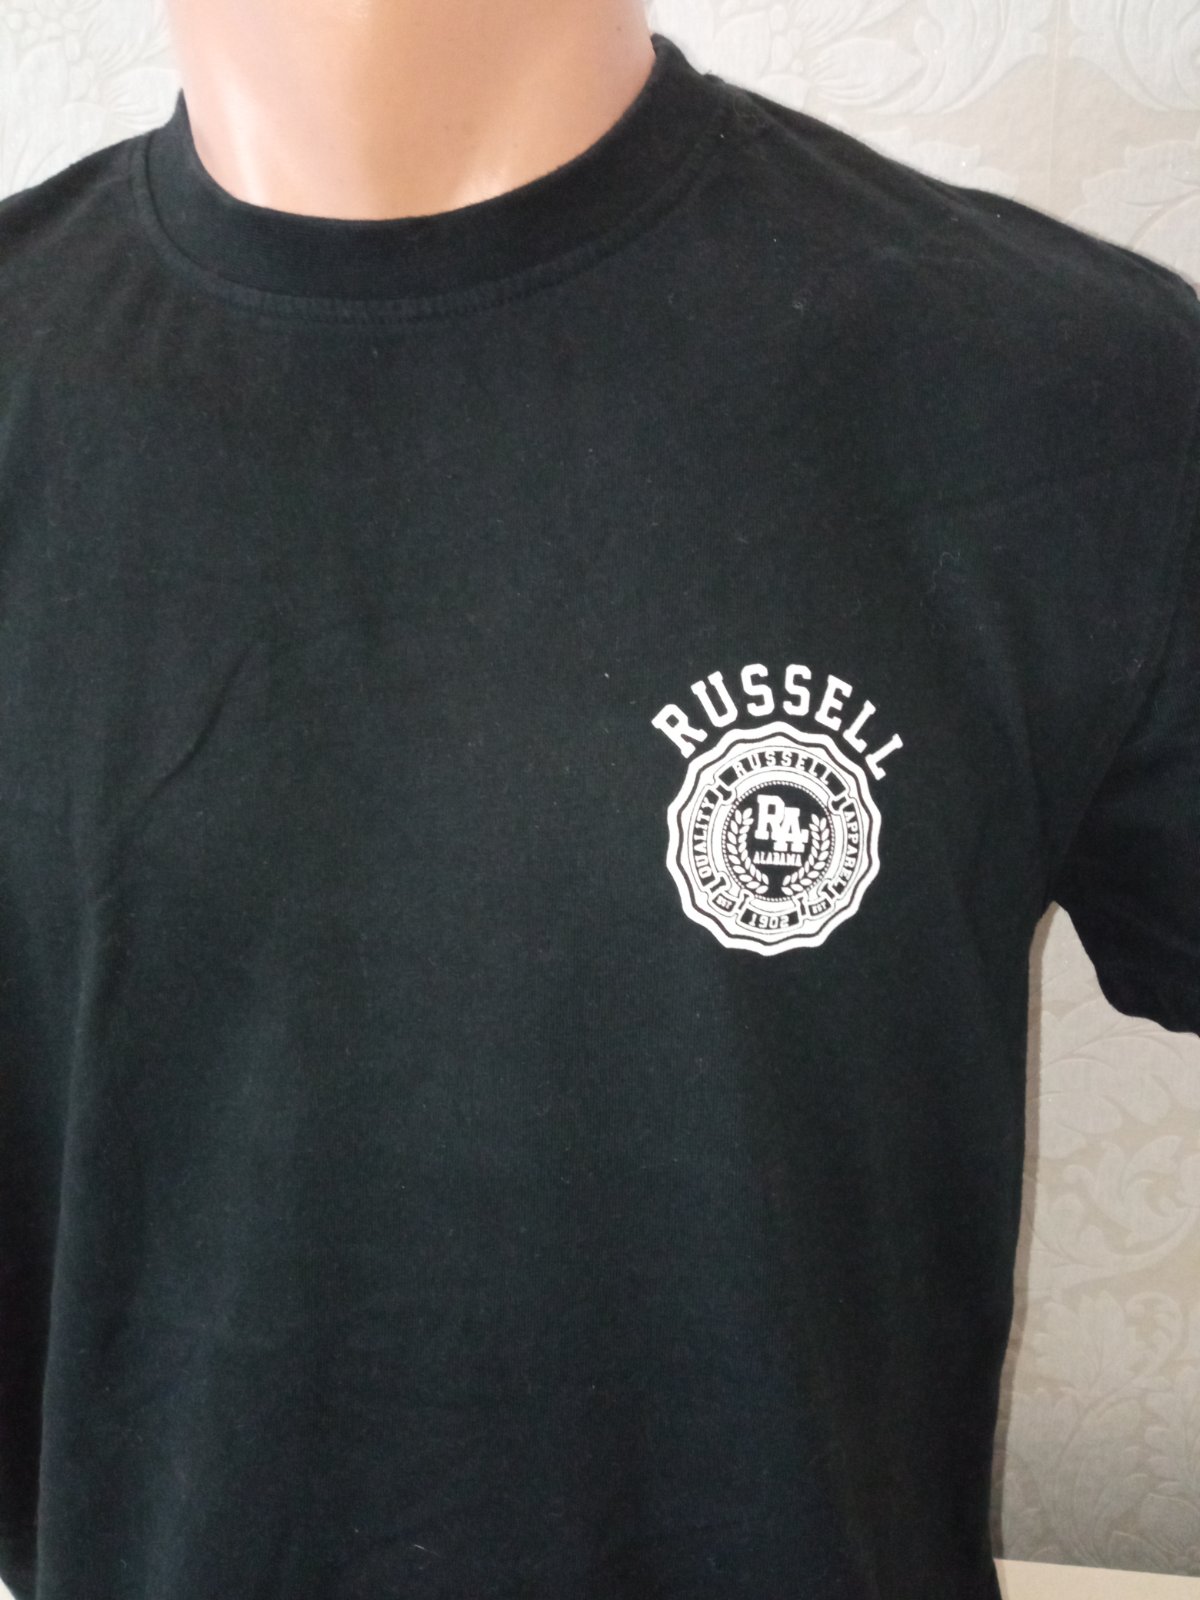 Čierne tričko krátky rukáv s potlačou Russell (S)